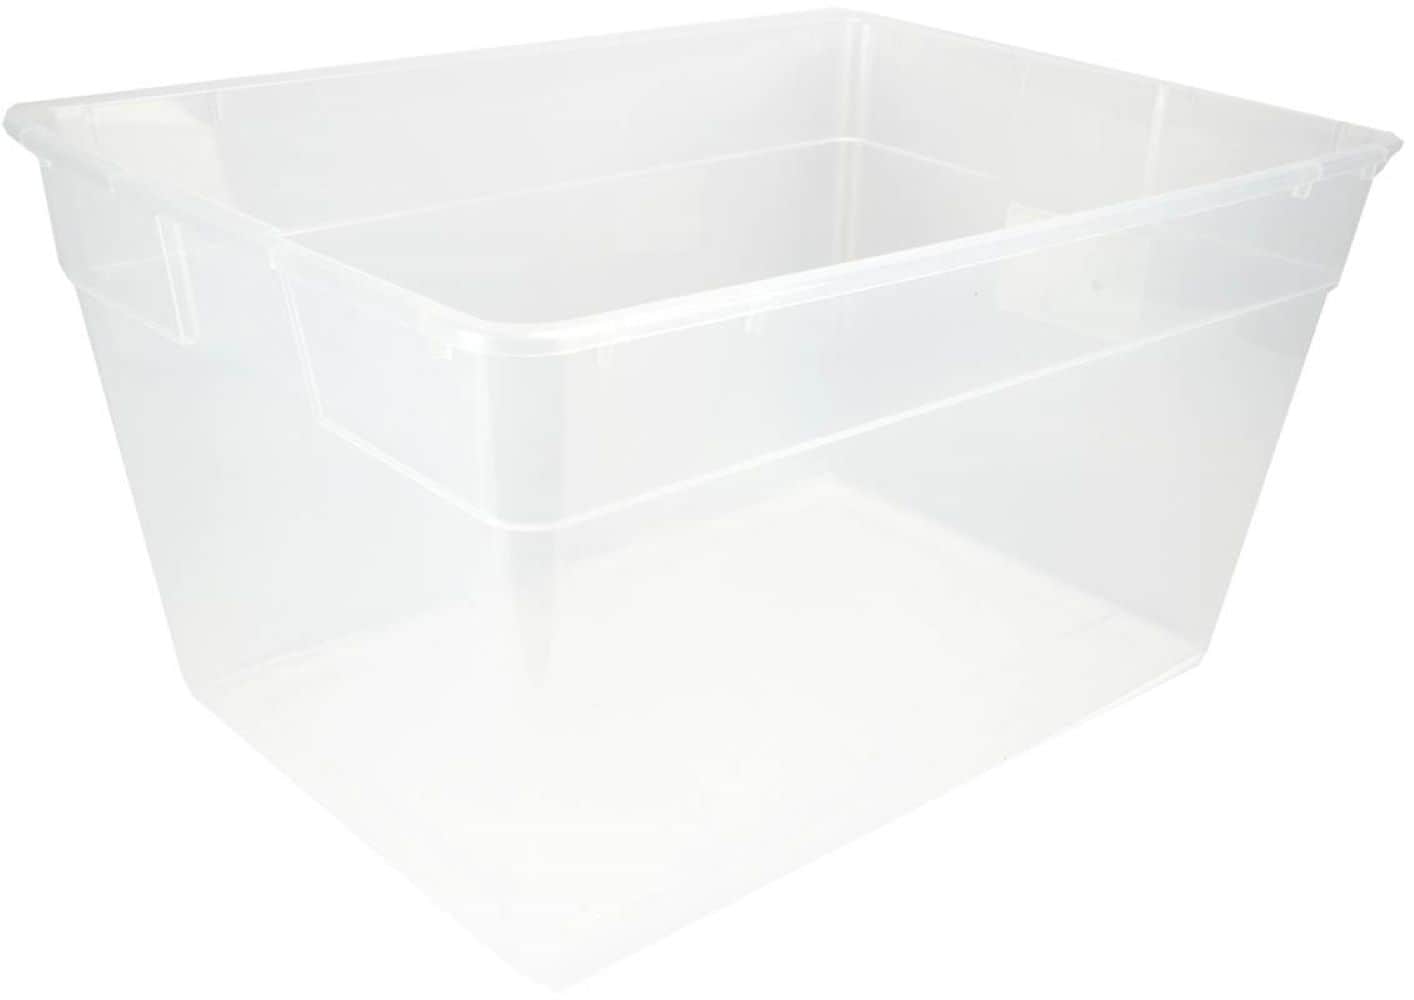 Sterilite 56 Quart Clear Storage Box